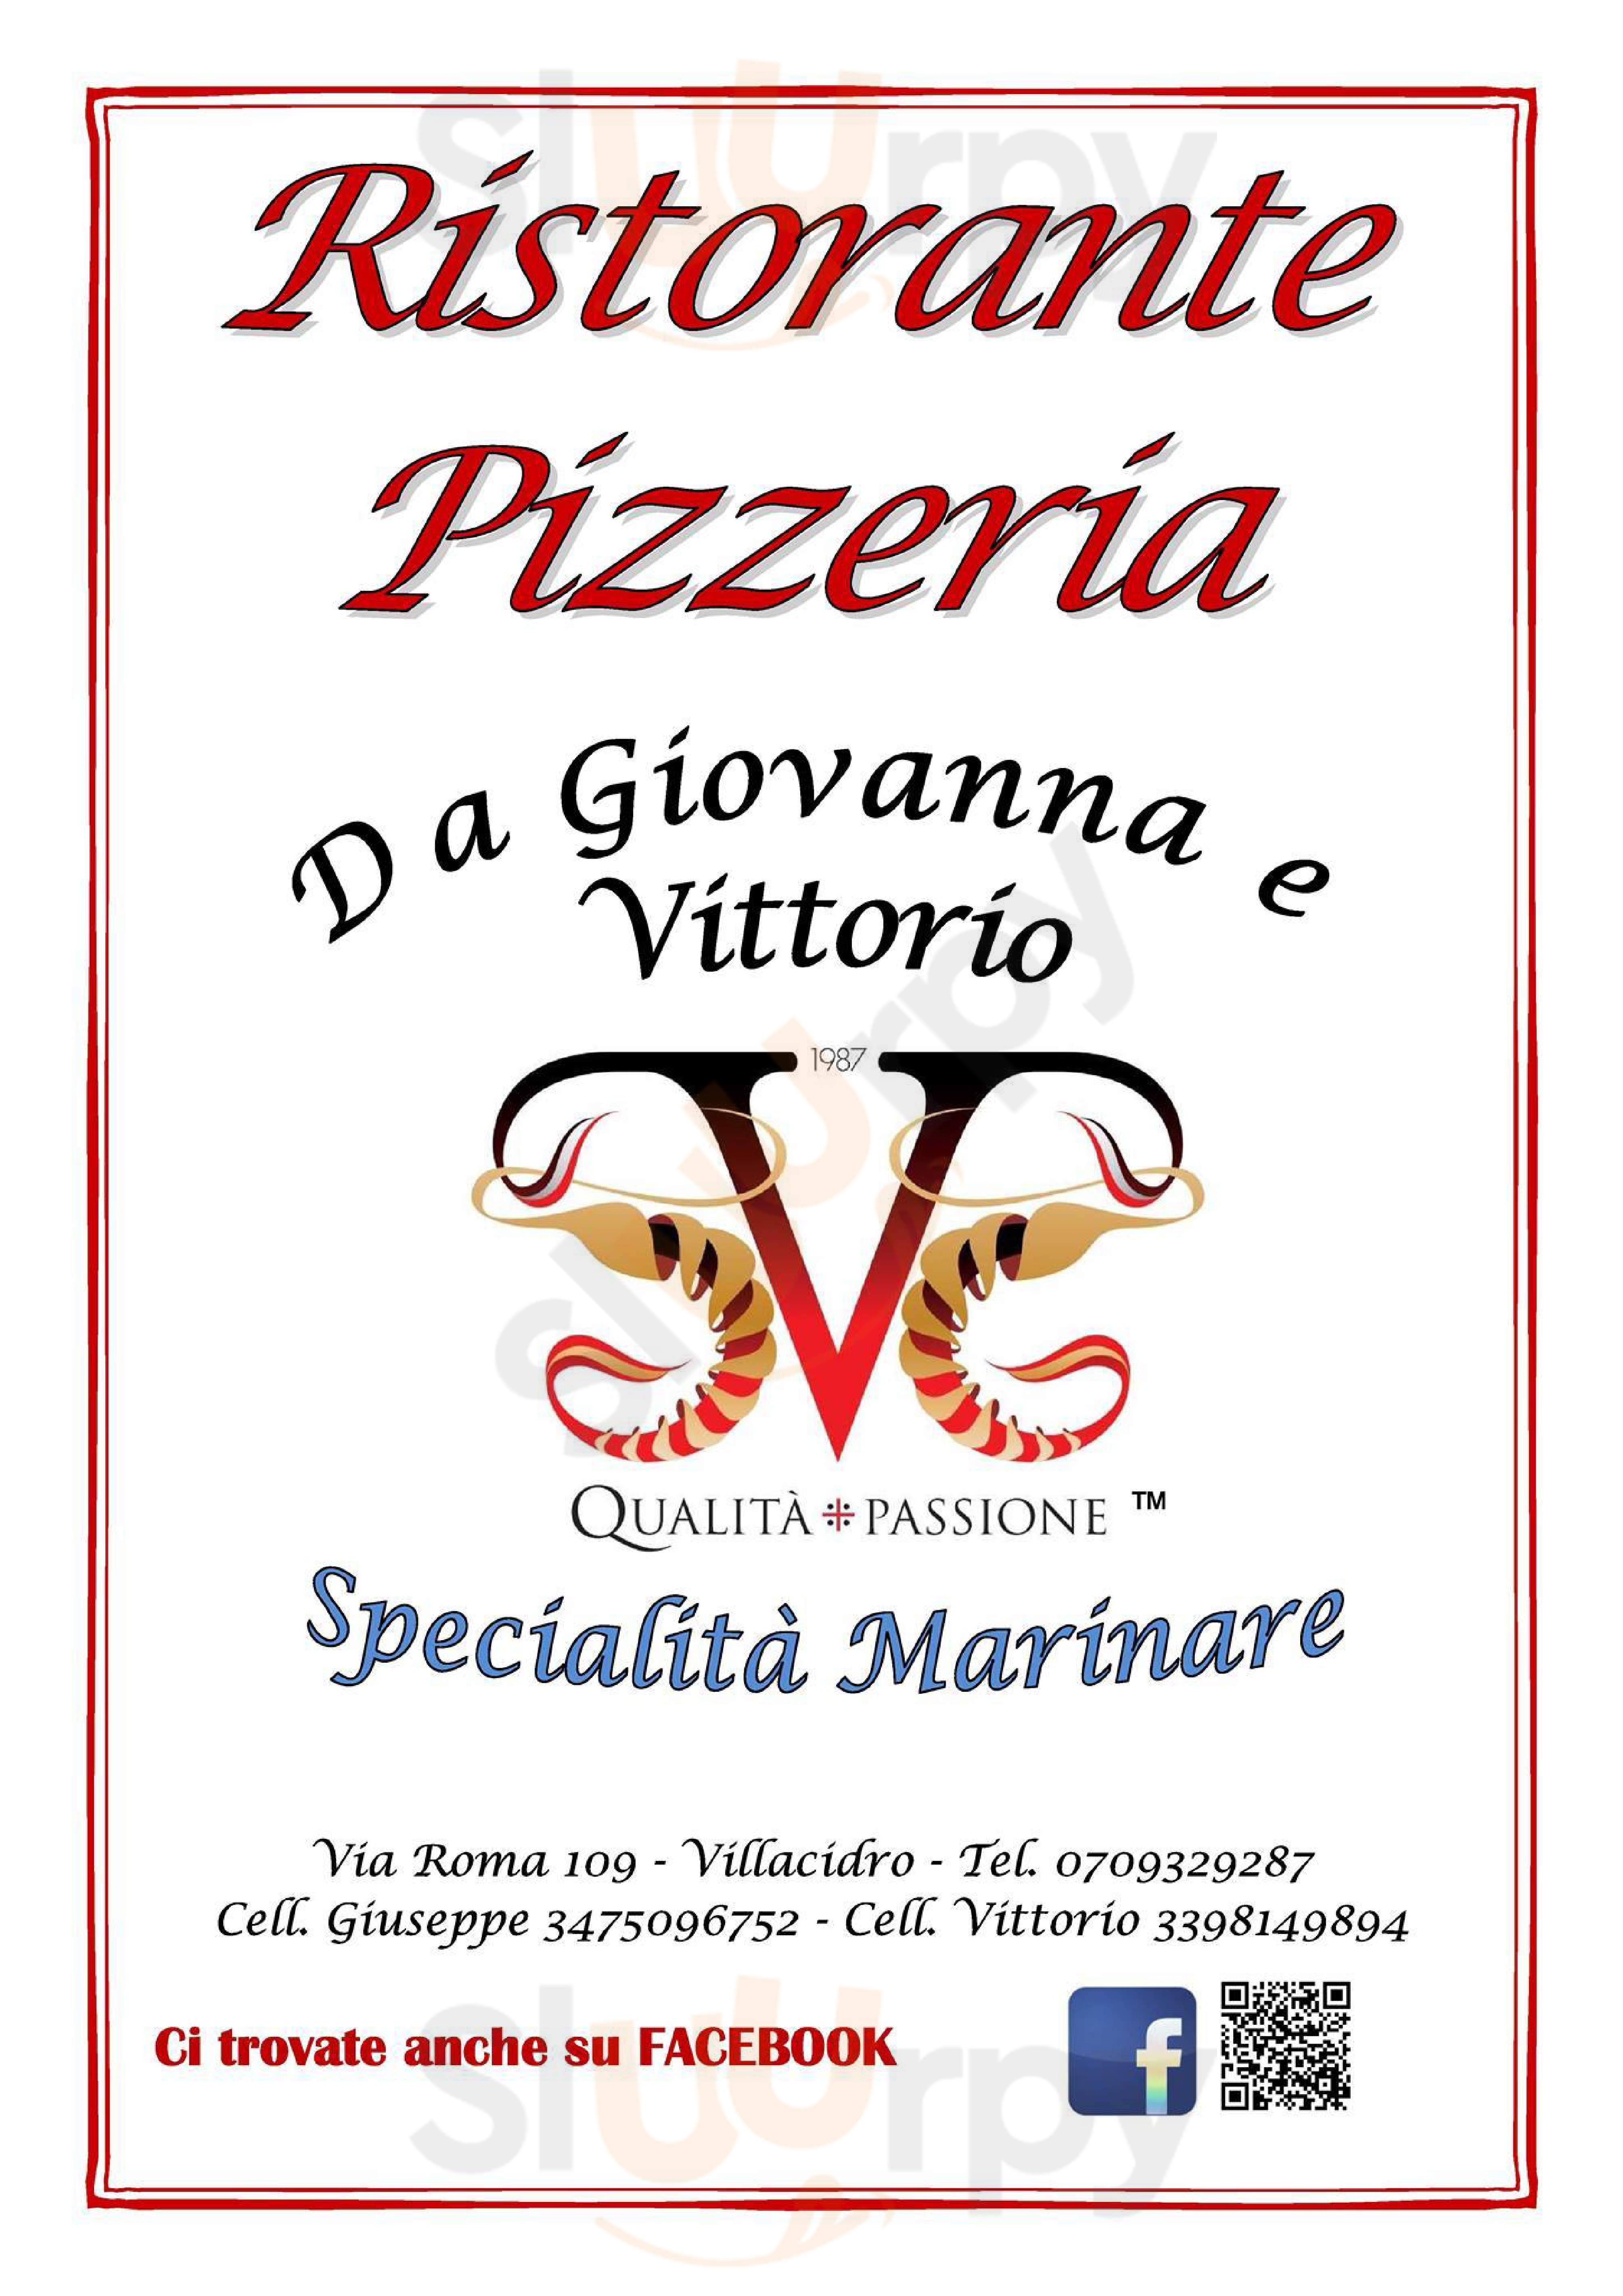 Ristorante Pizzeria da Giovanna e Vittorio Villacidro menù 1 pagina